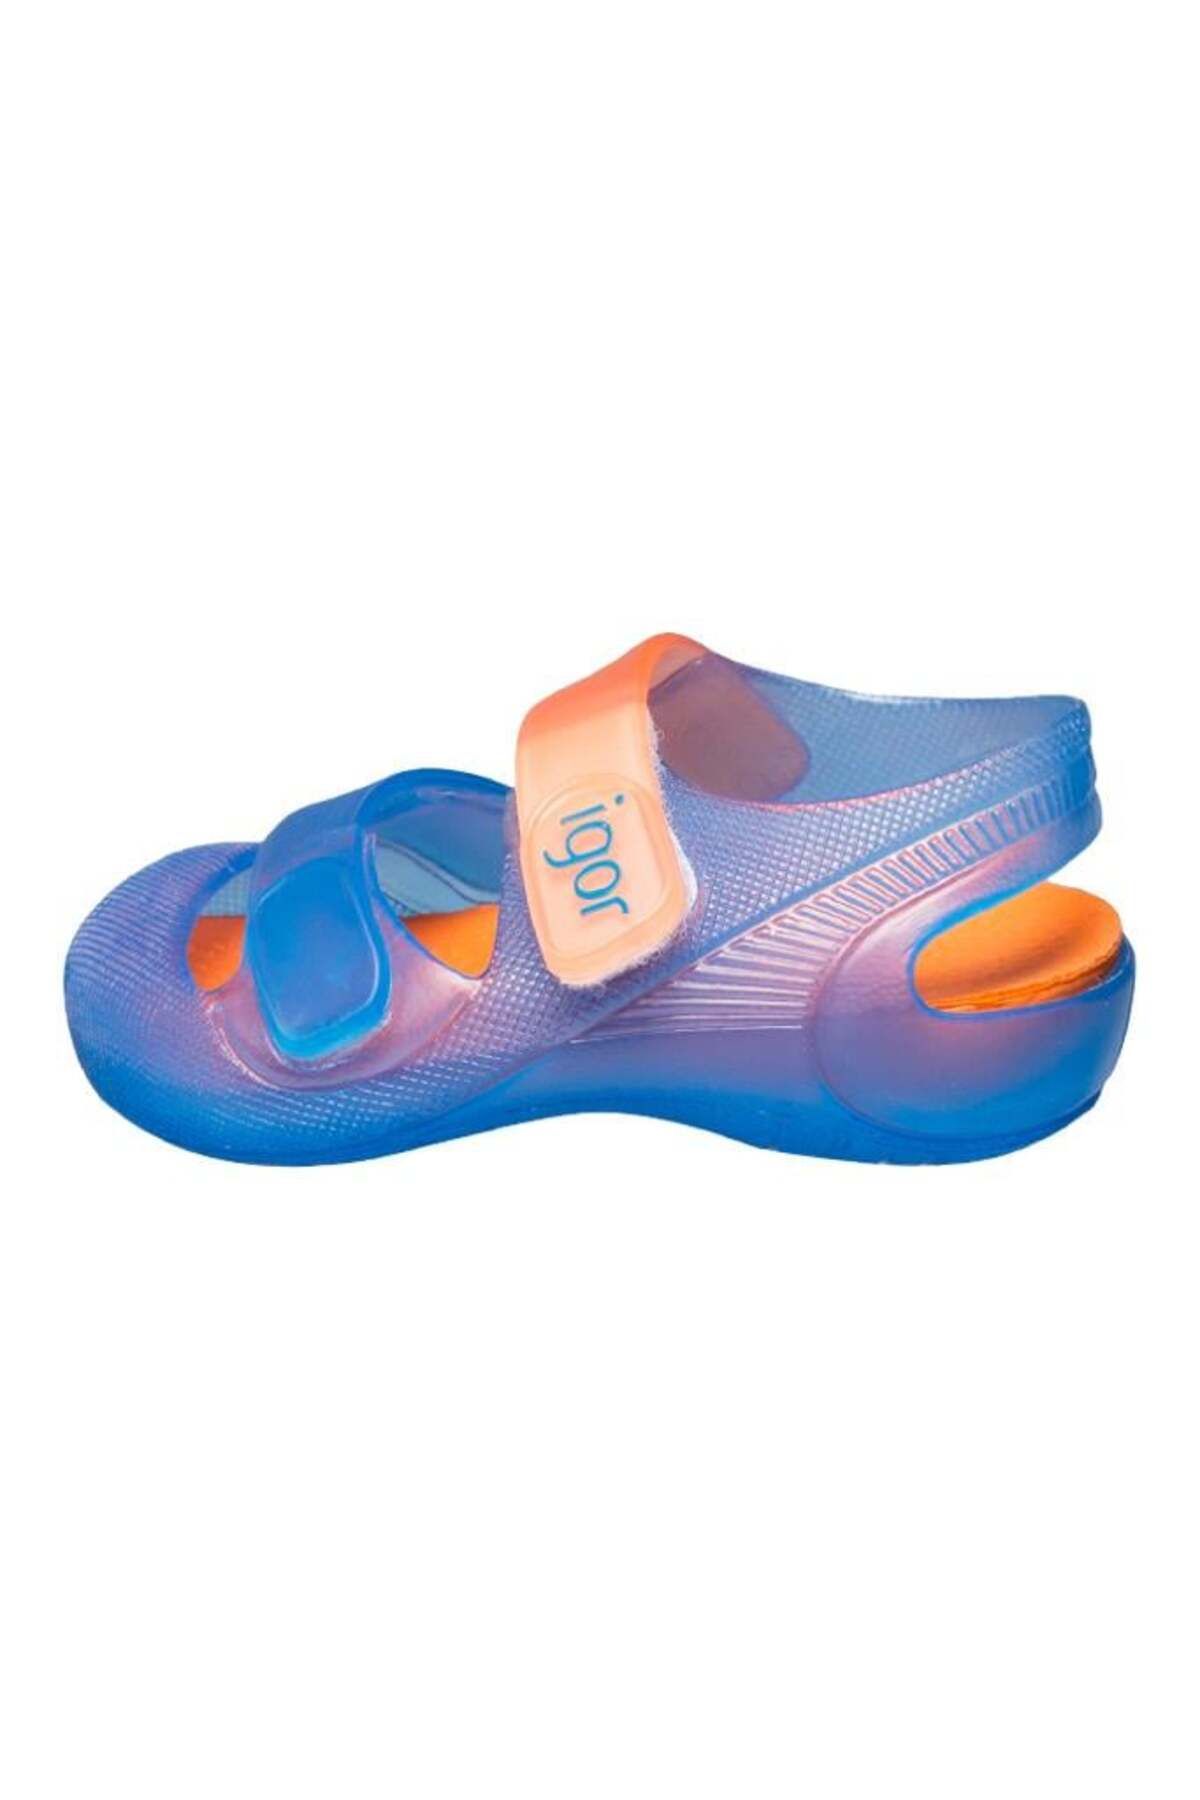 IGOR Çocuk Cırtlı Sandalet S10146 Bondı Bıcolor